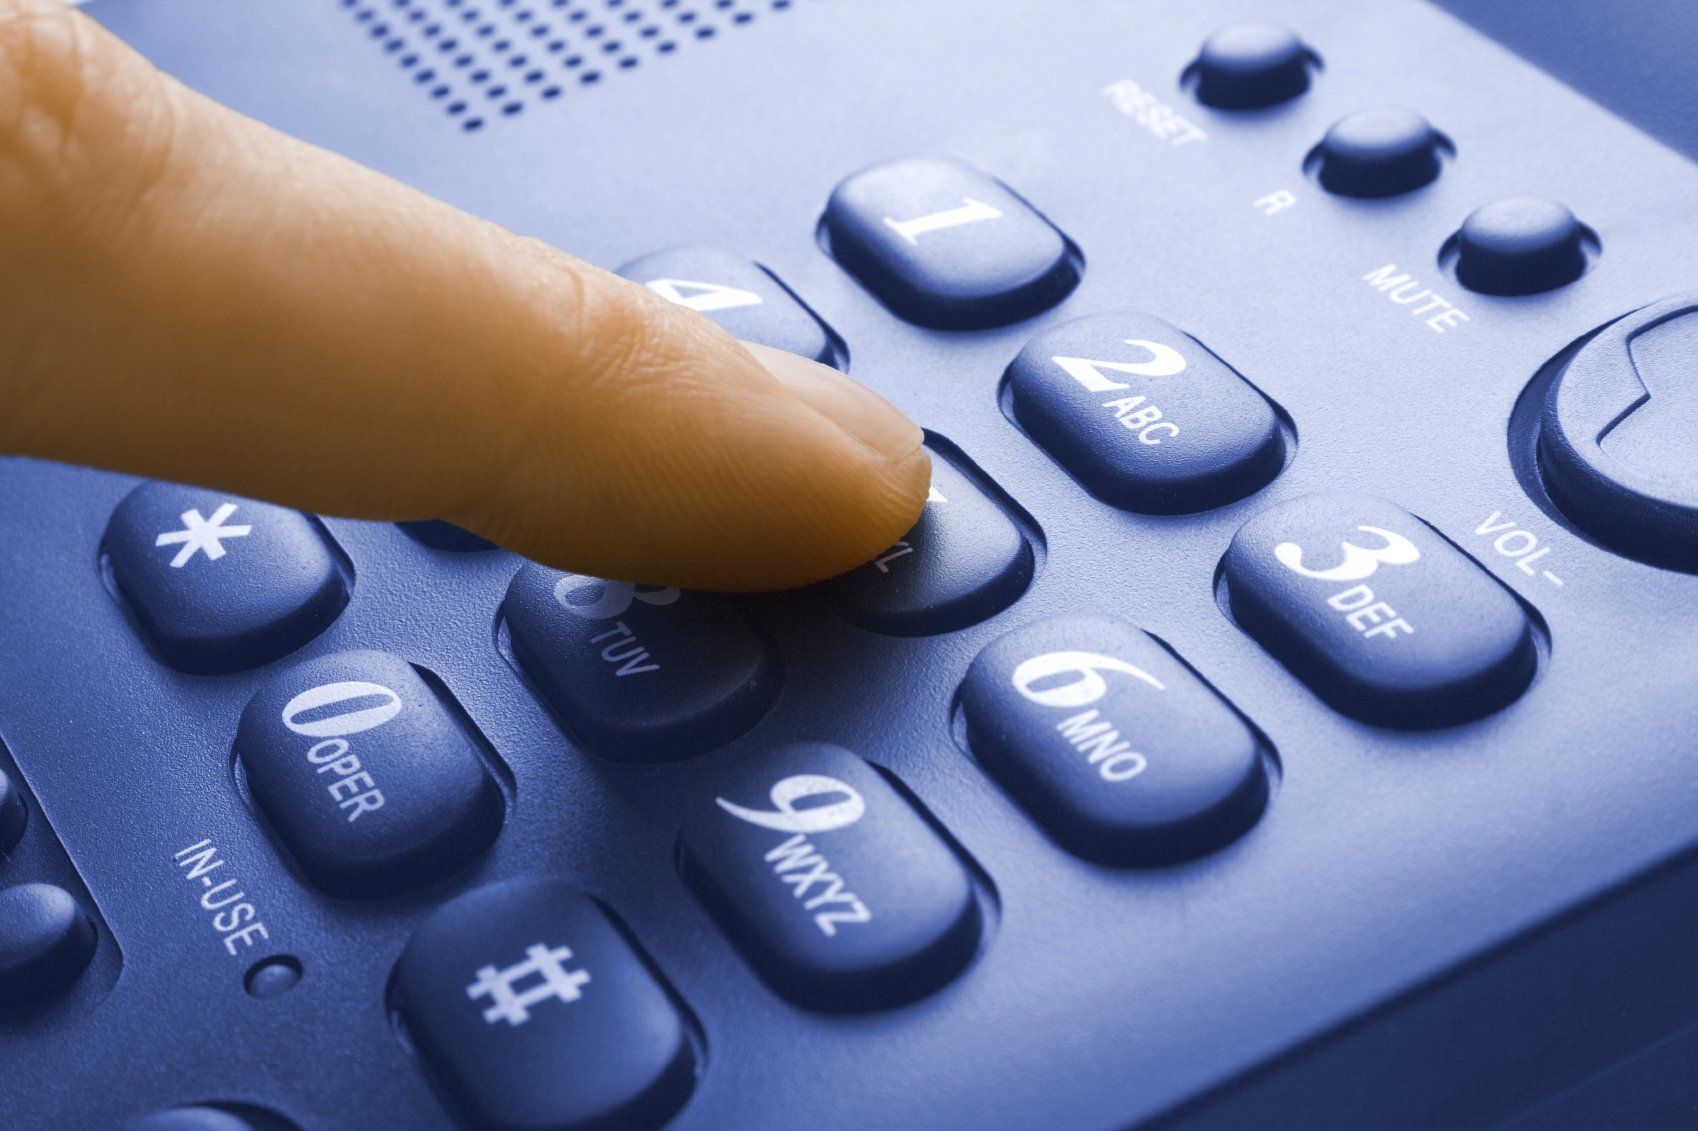 Finger einer Person, die eine Telefonnumer auf schwarzem Tastentelefon wählt